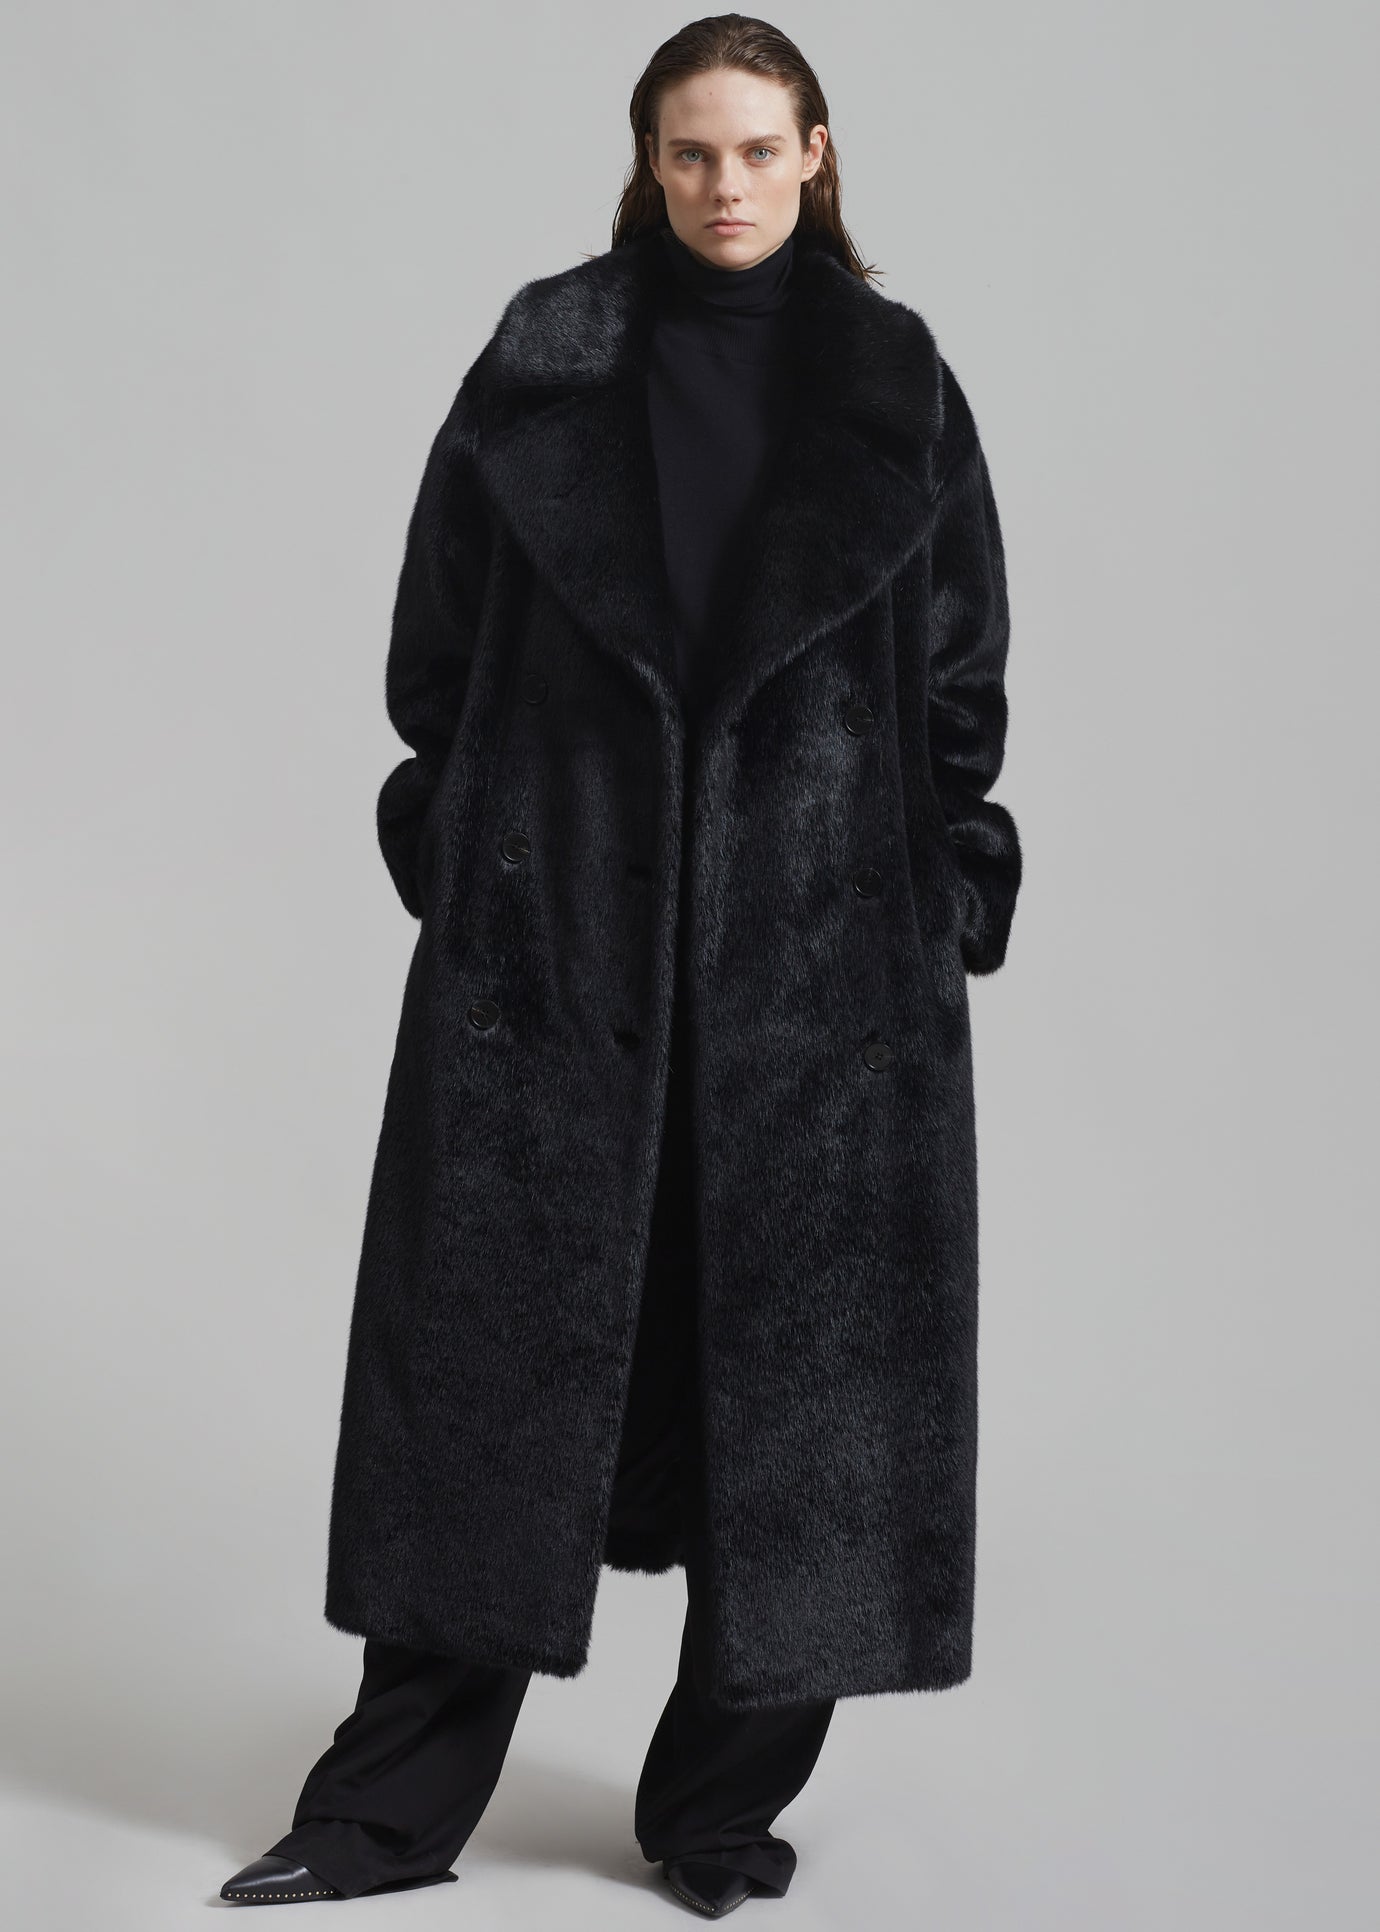 Dean Black Mink Full Length Fur Men's Overcoat